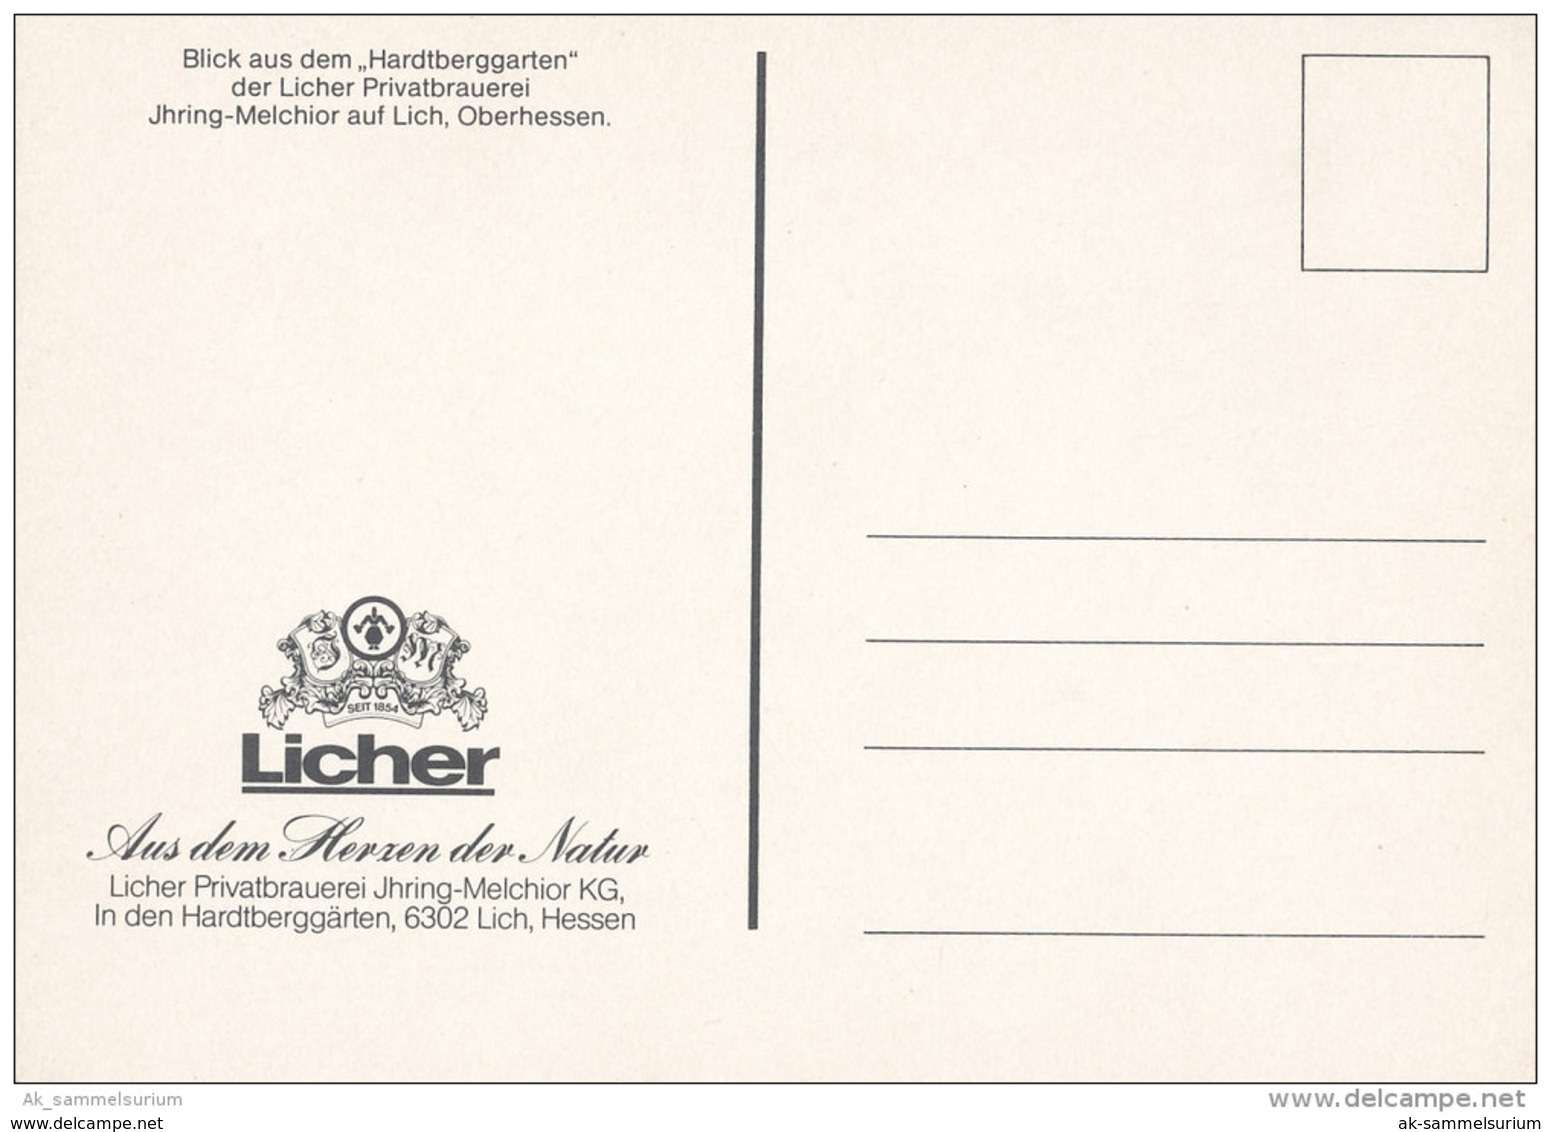 Lich / Licher Privatbrauerei / Brewery / Bier / Beer (D-A13/01) - Lich